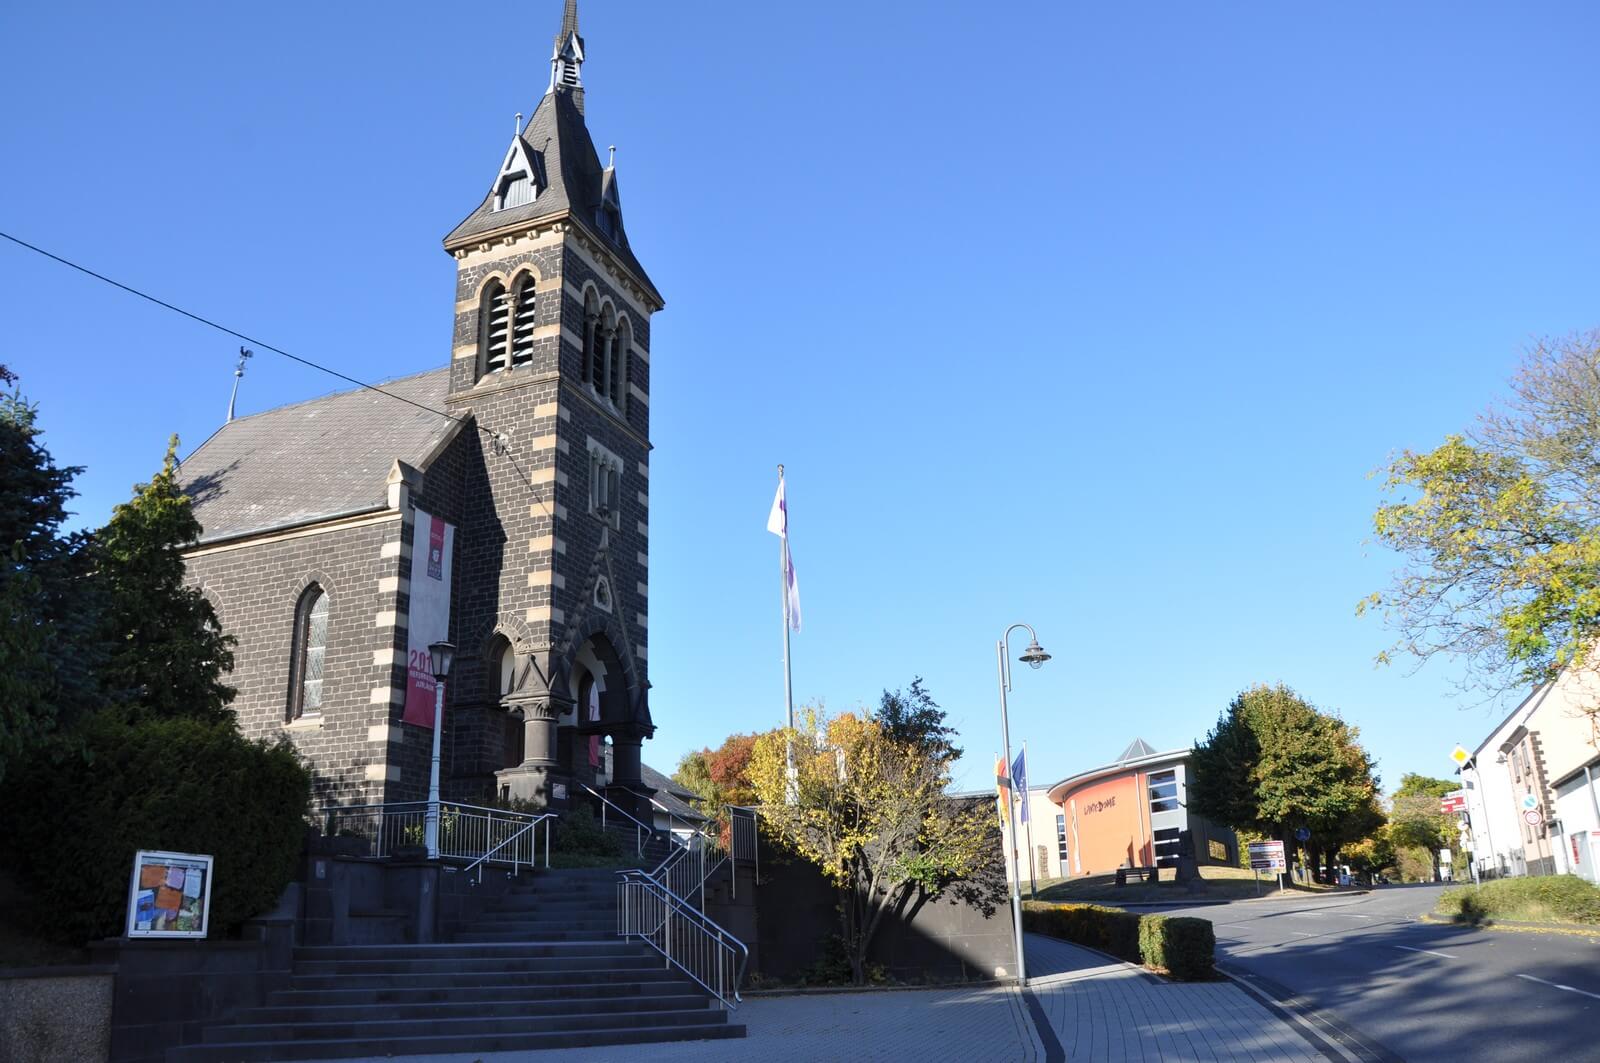 Evangelische Kirche und Lava-Dome in Niedermendig - Lupe Reisen